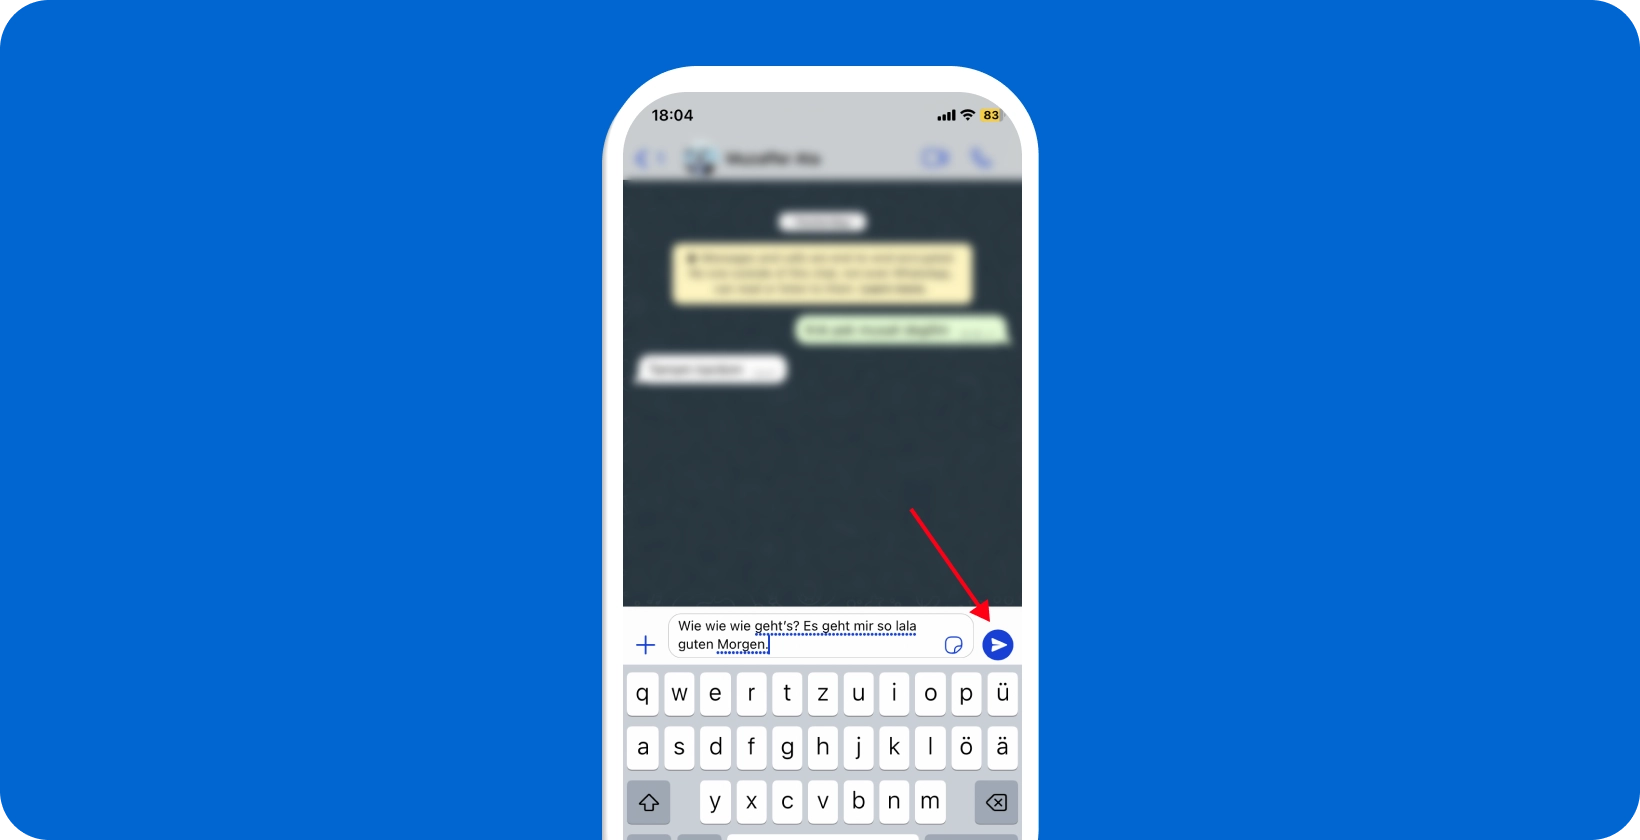 Экран смартфона, показывающий используемую функцию голосовой диктовки WhatsApp, с выделенным значком микрофона.